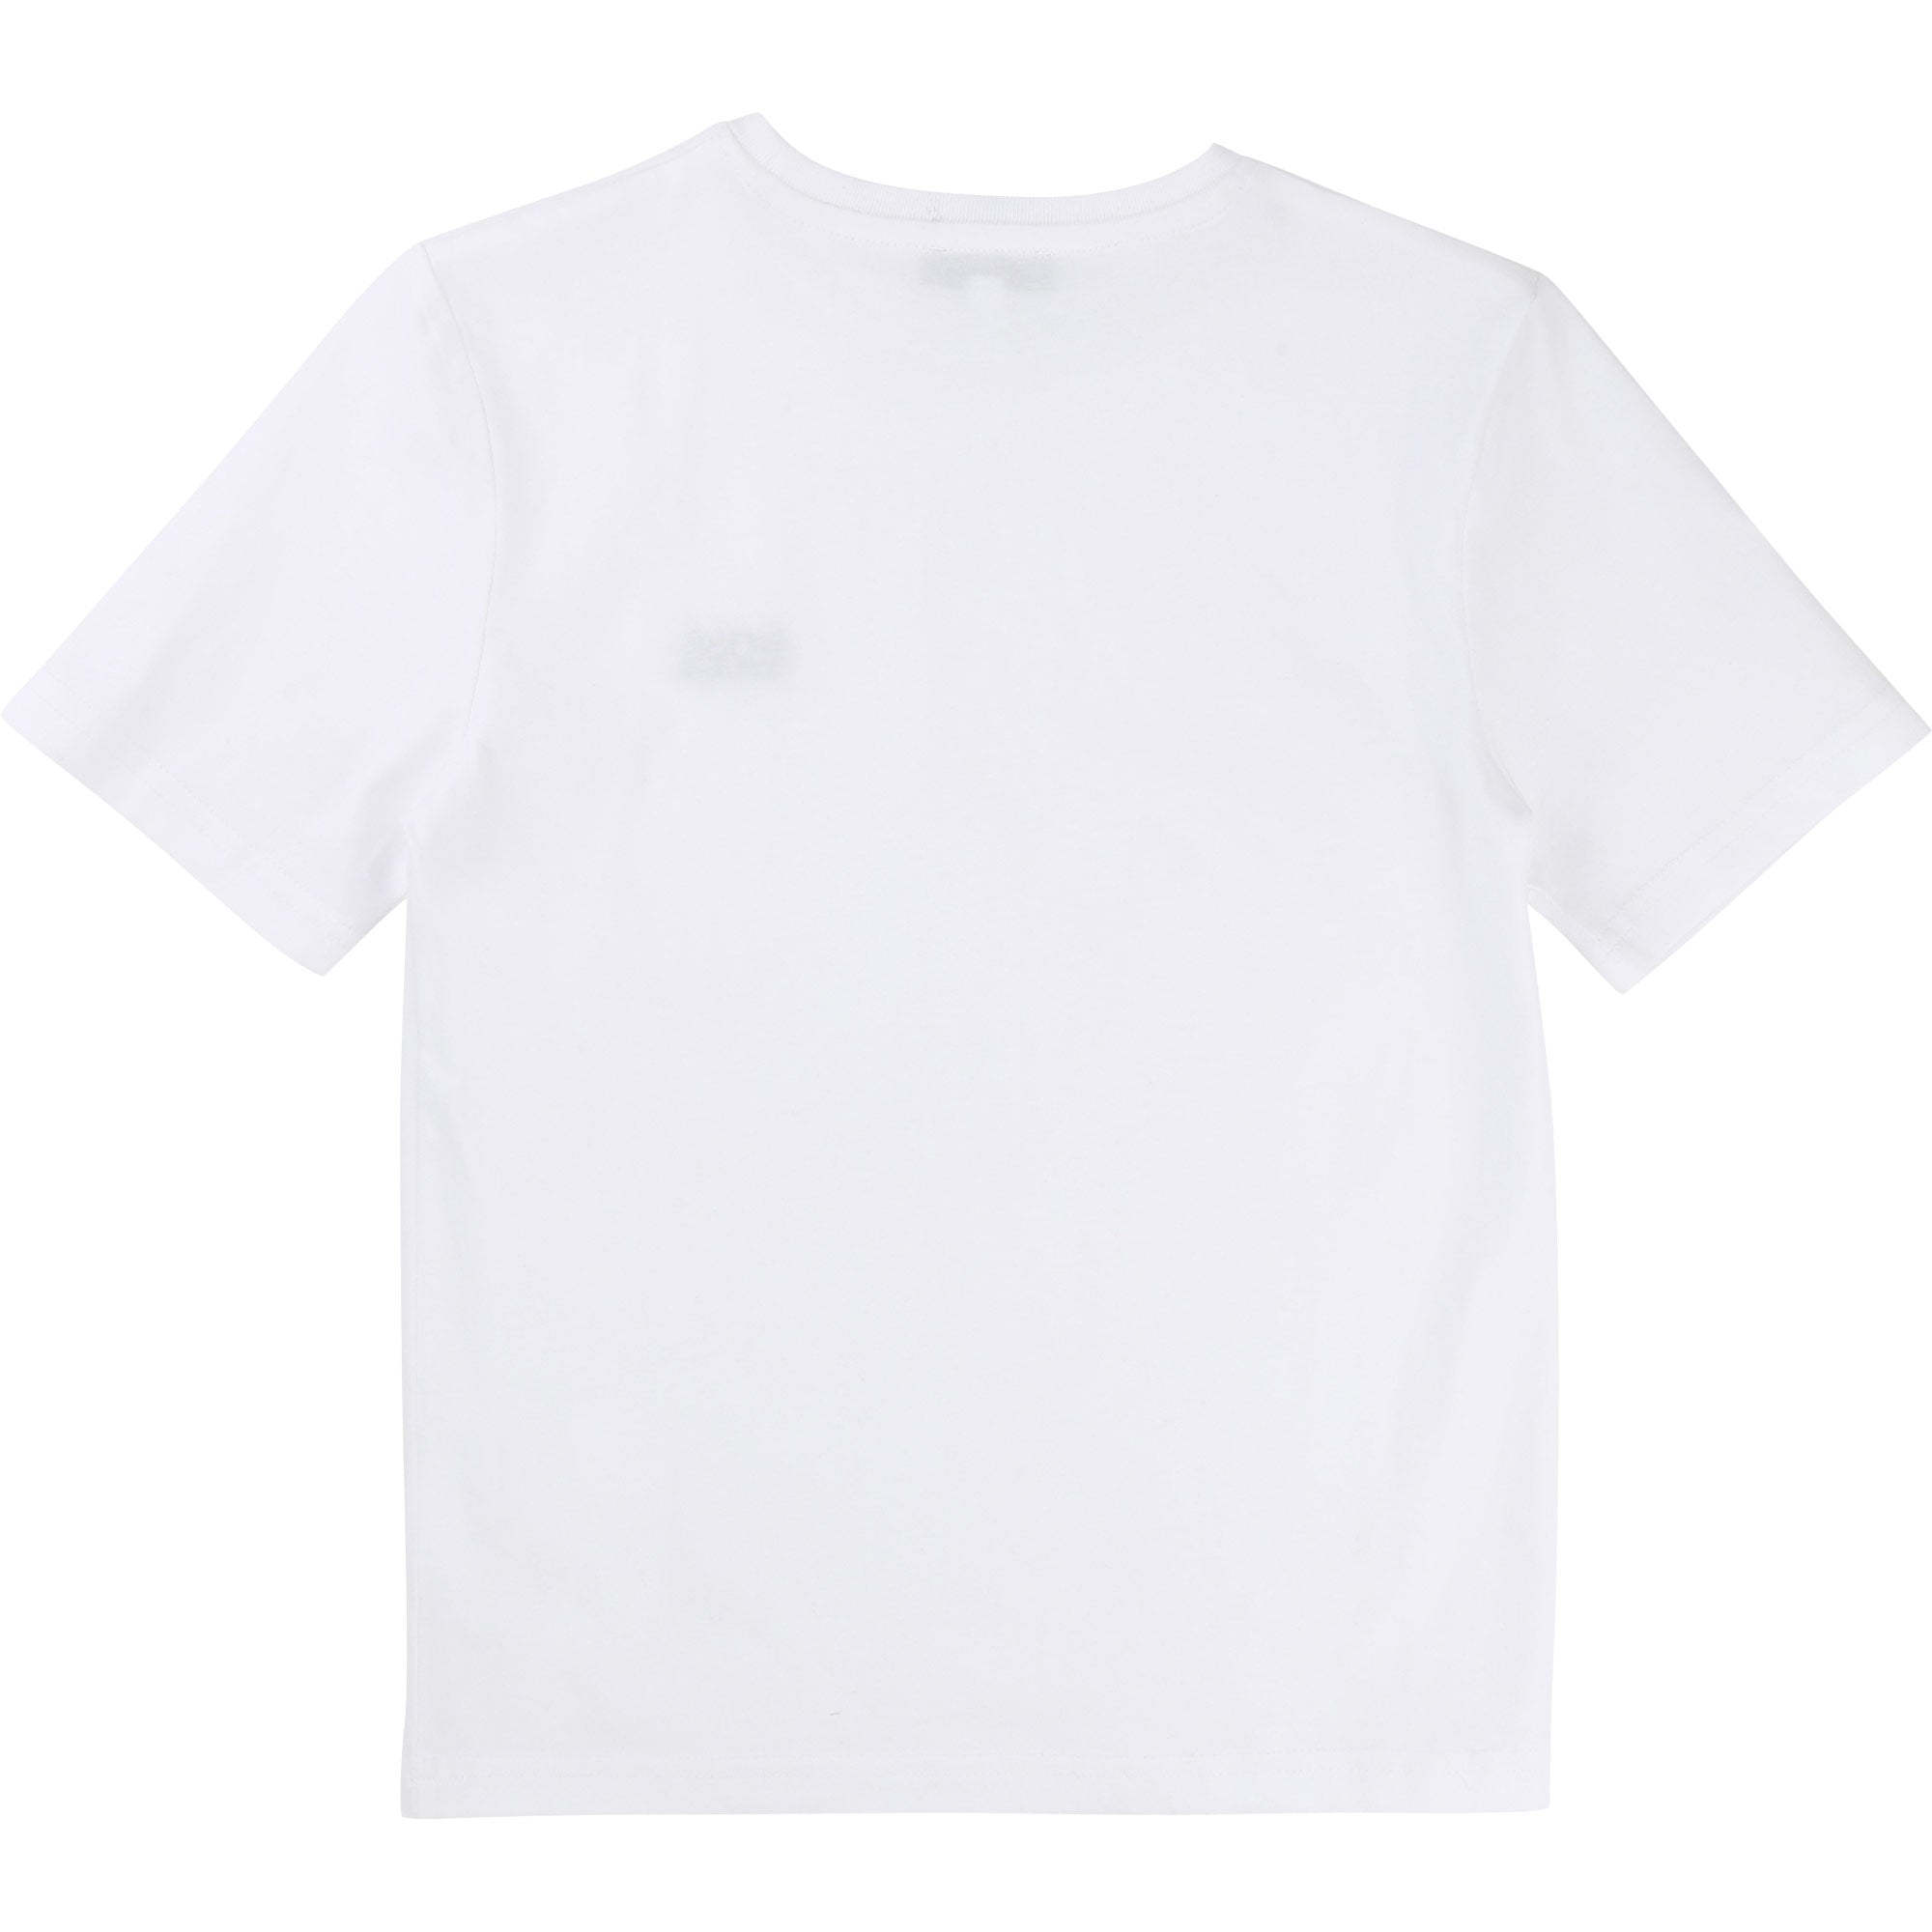 Hugo Boss White T-Shirt